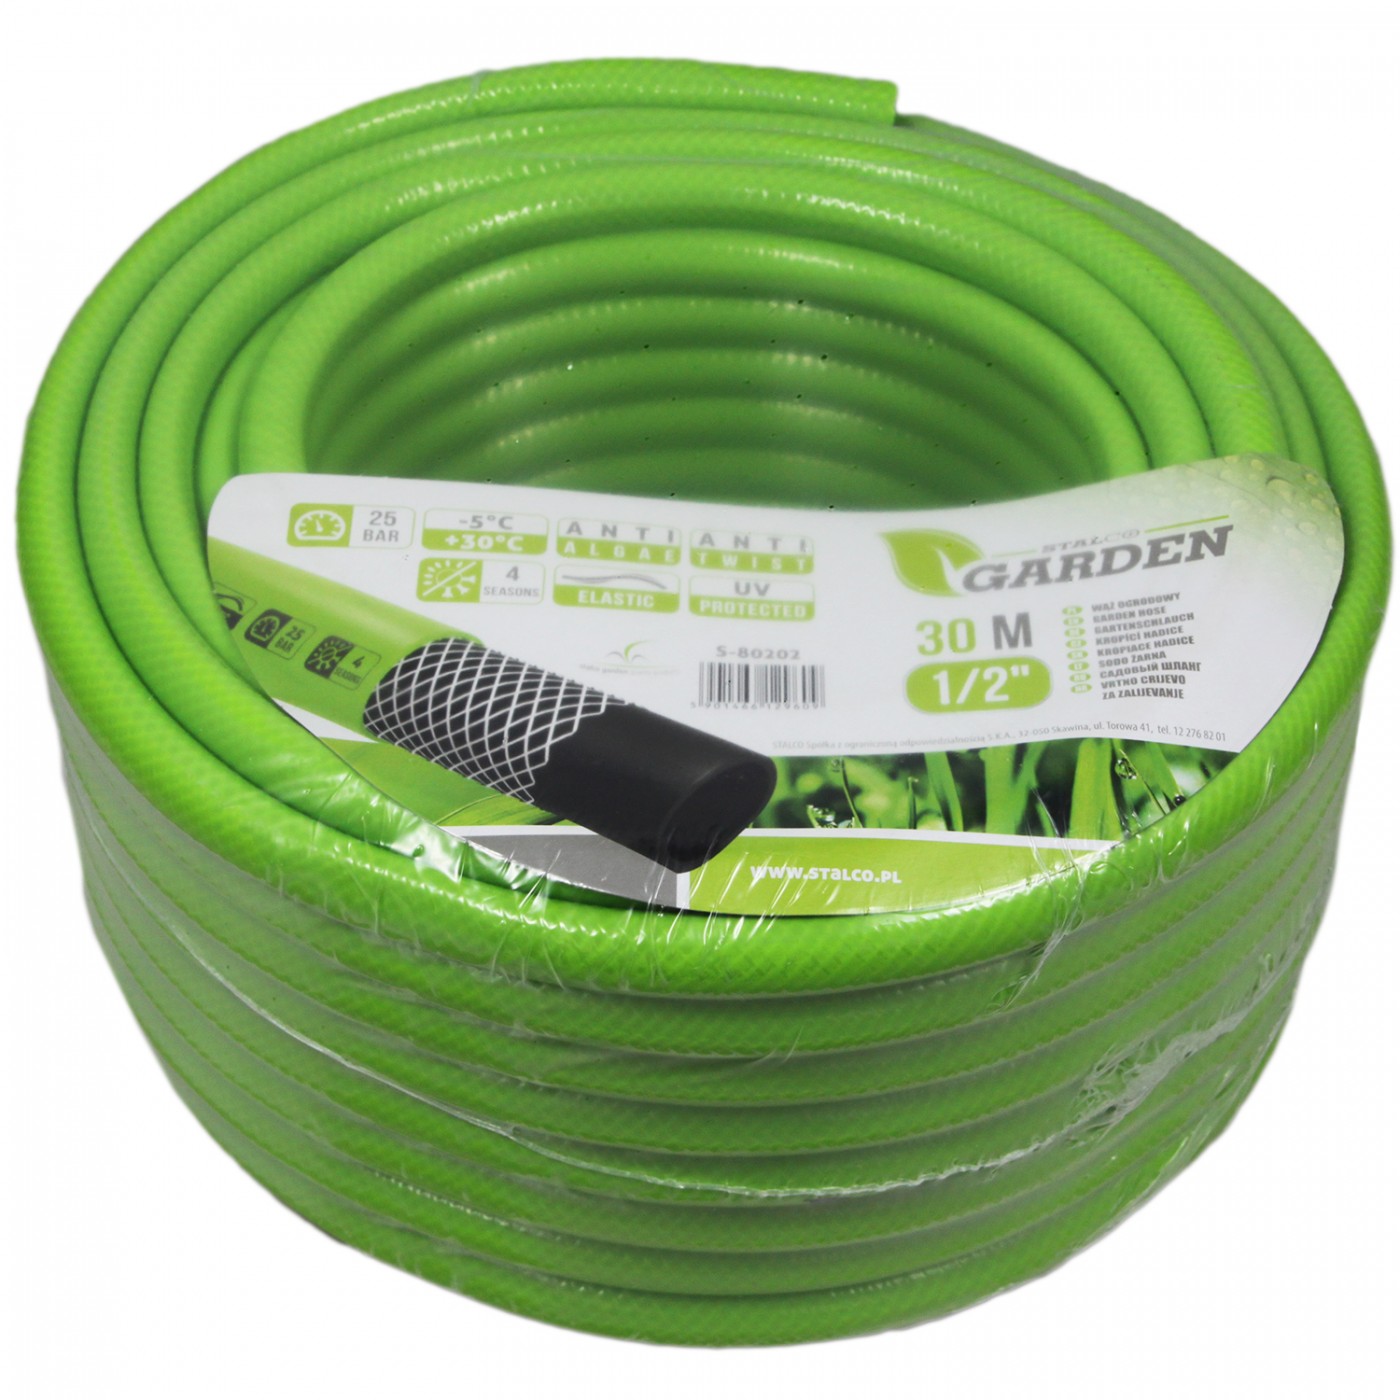 Wąż ogrodowy 30 m - 1/2" - Stalco Garden S80202 - zielony elastyczny